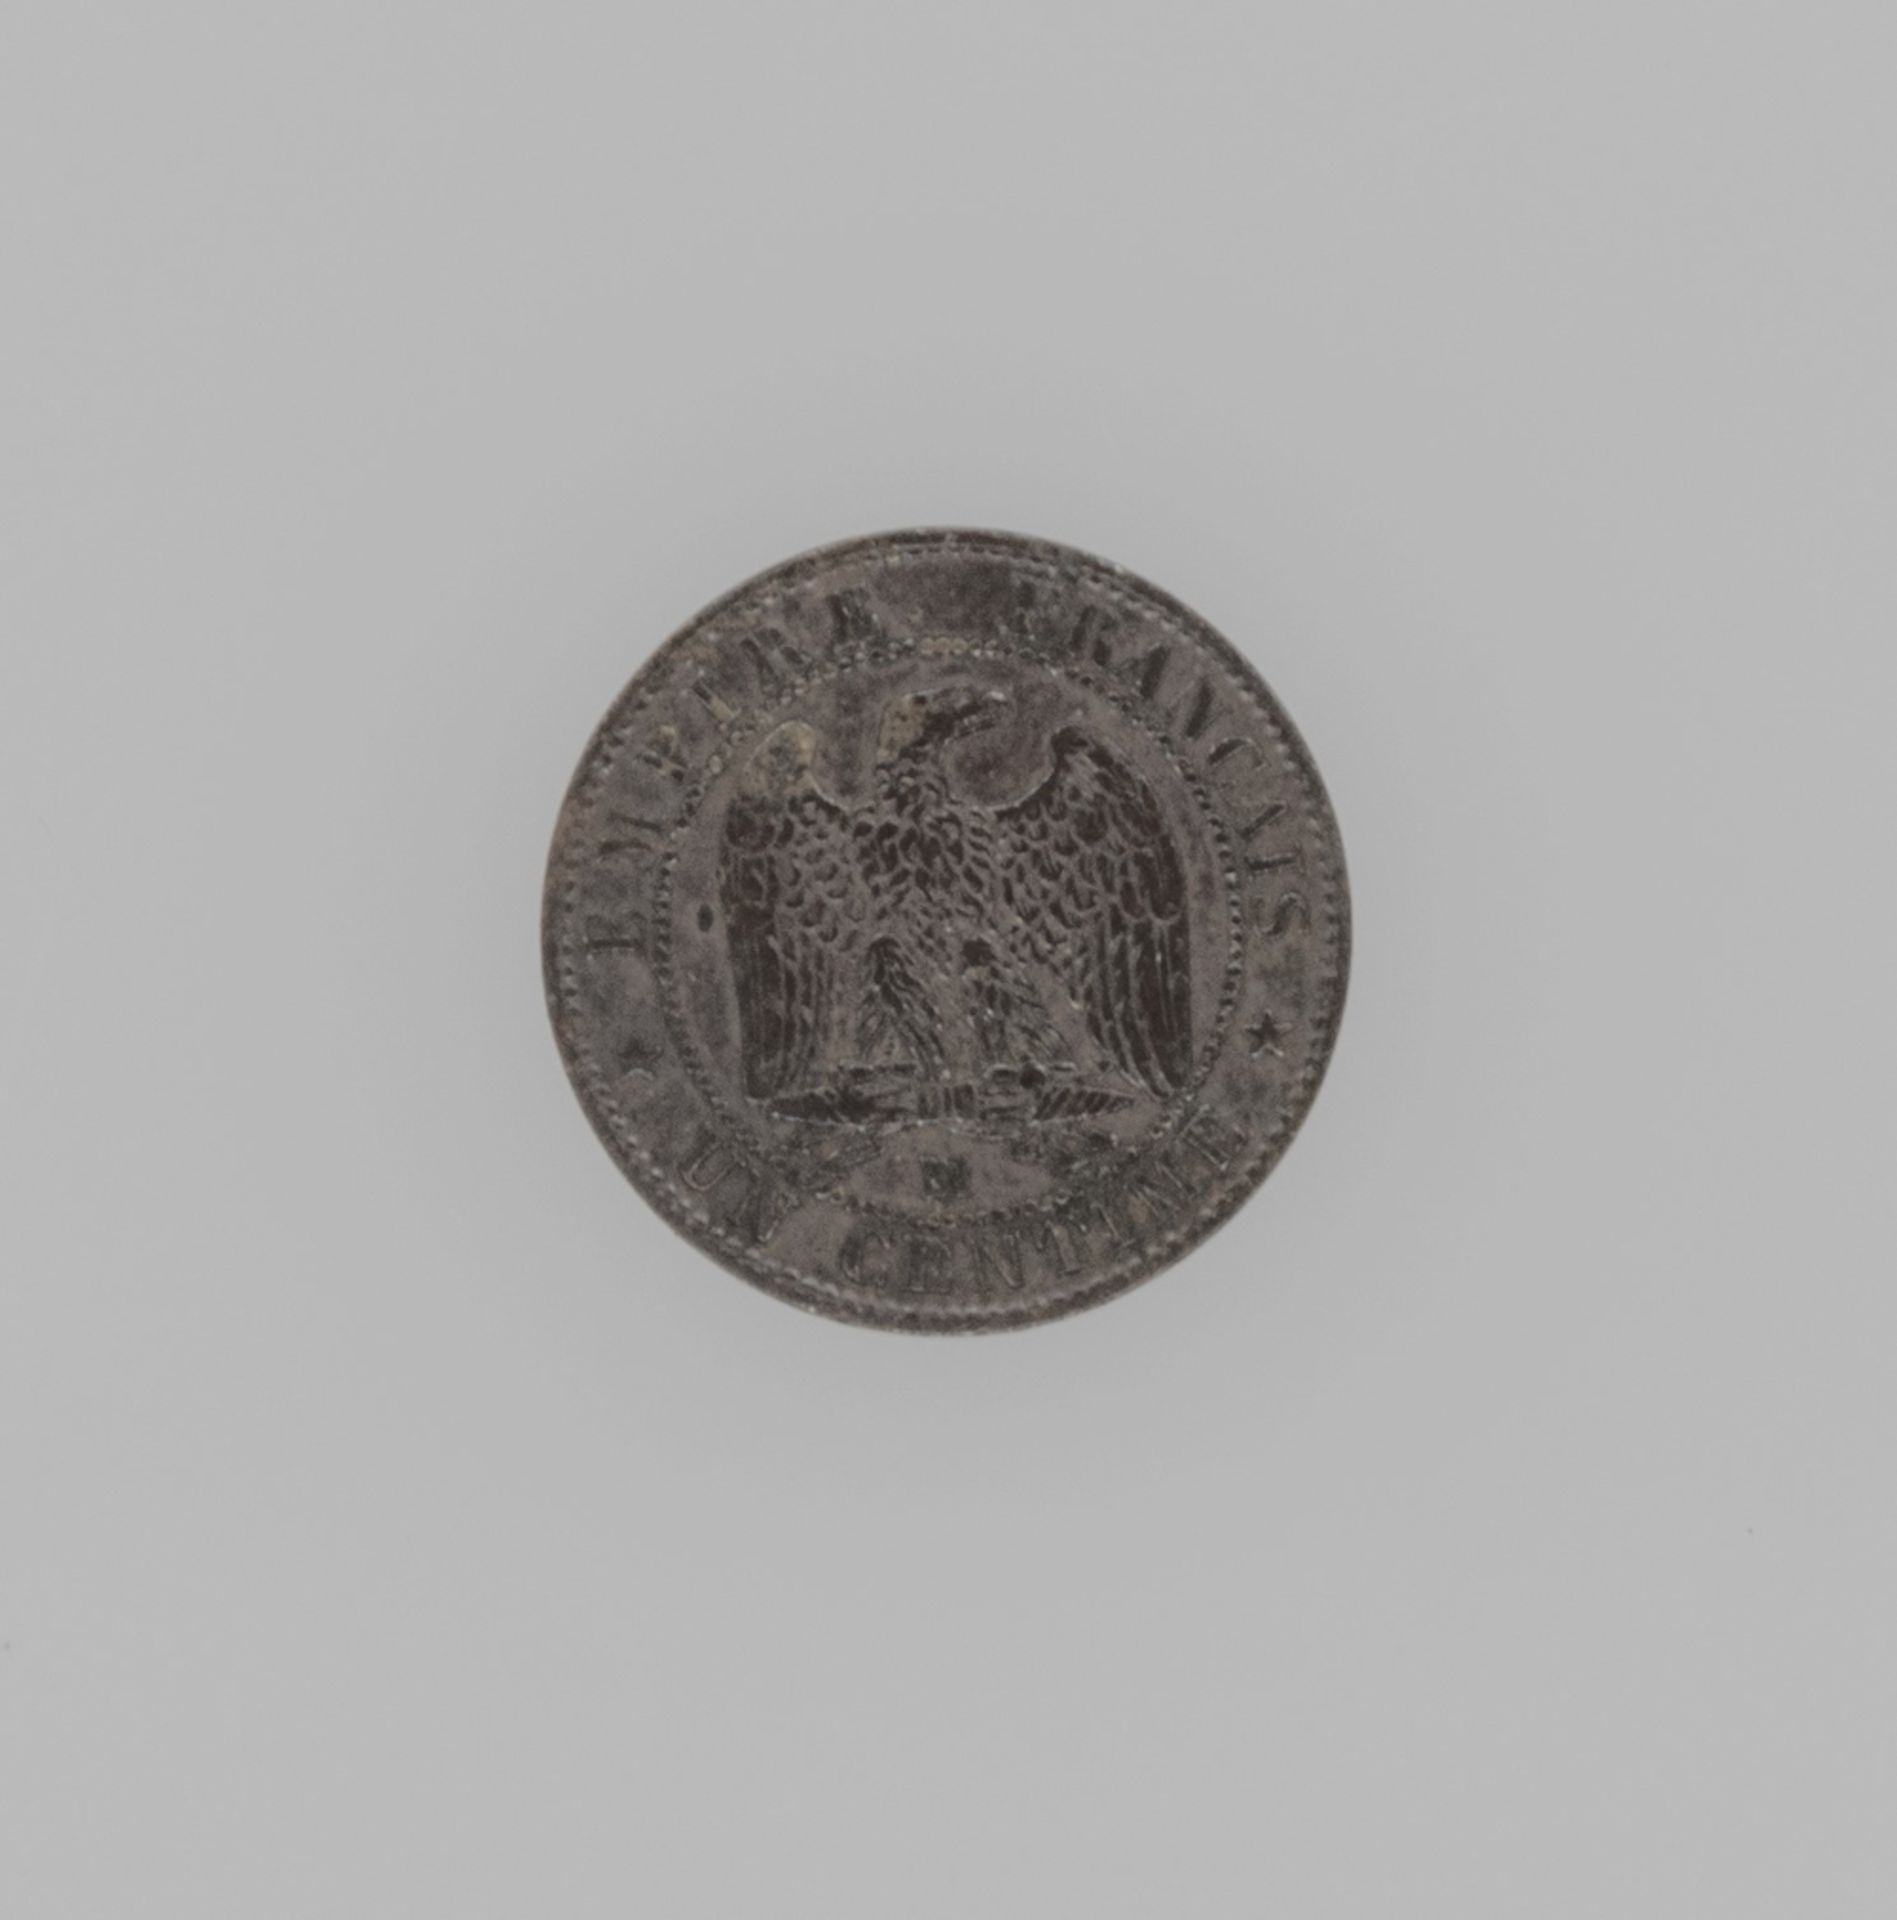 Frankreich 1857, 1 Centime - Münze "Napoleon III.". Münzstätte: Straßburg. Erhaltung: ss. - Bild 2 aus 2